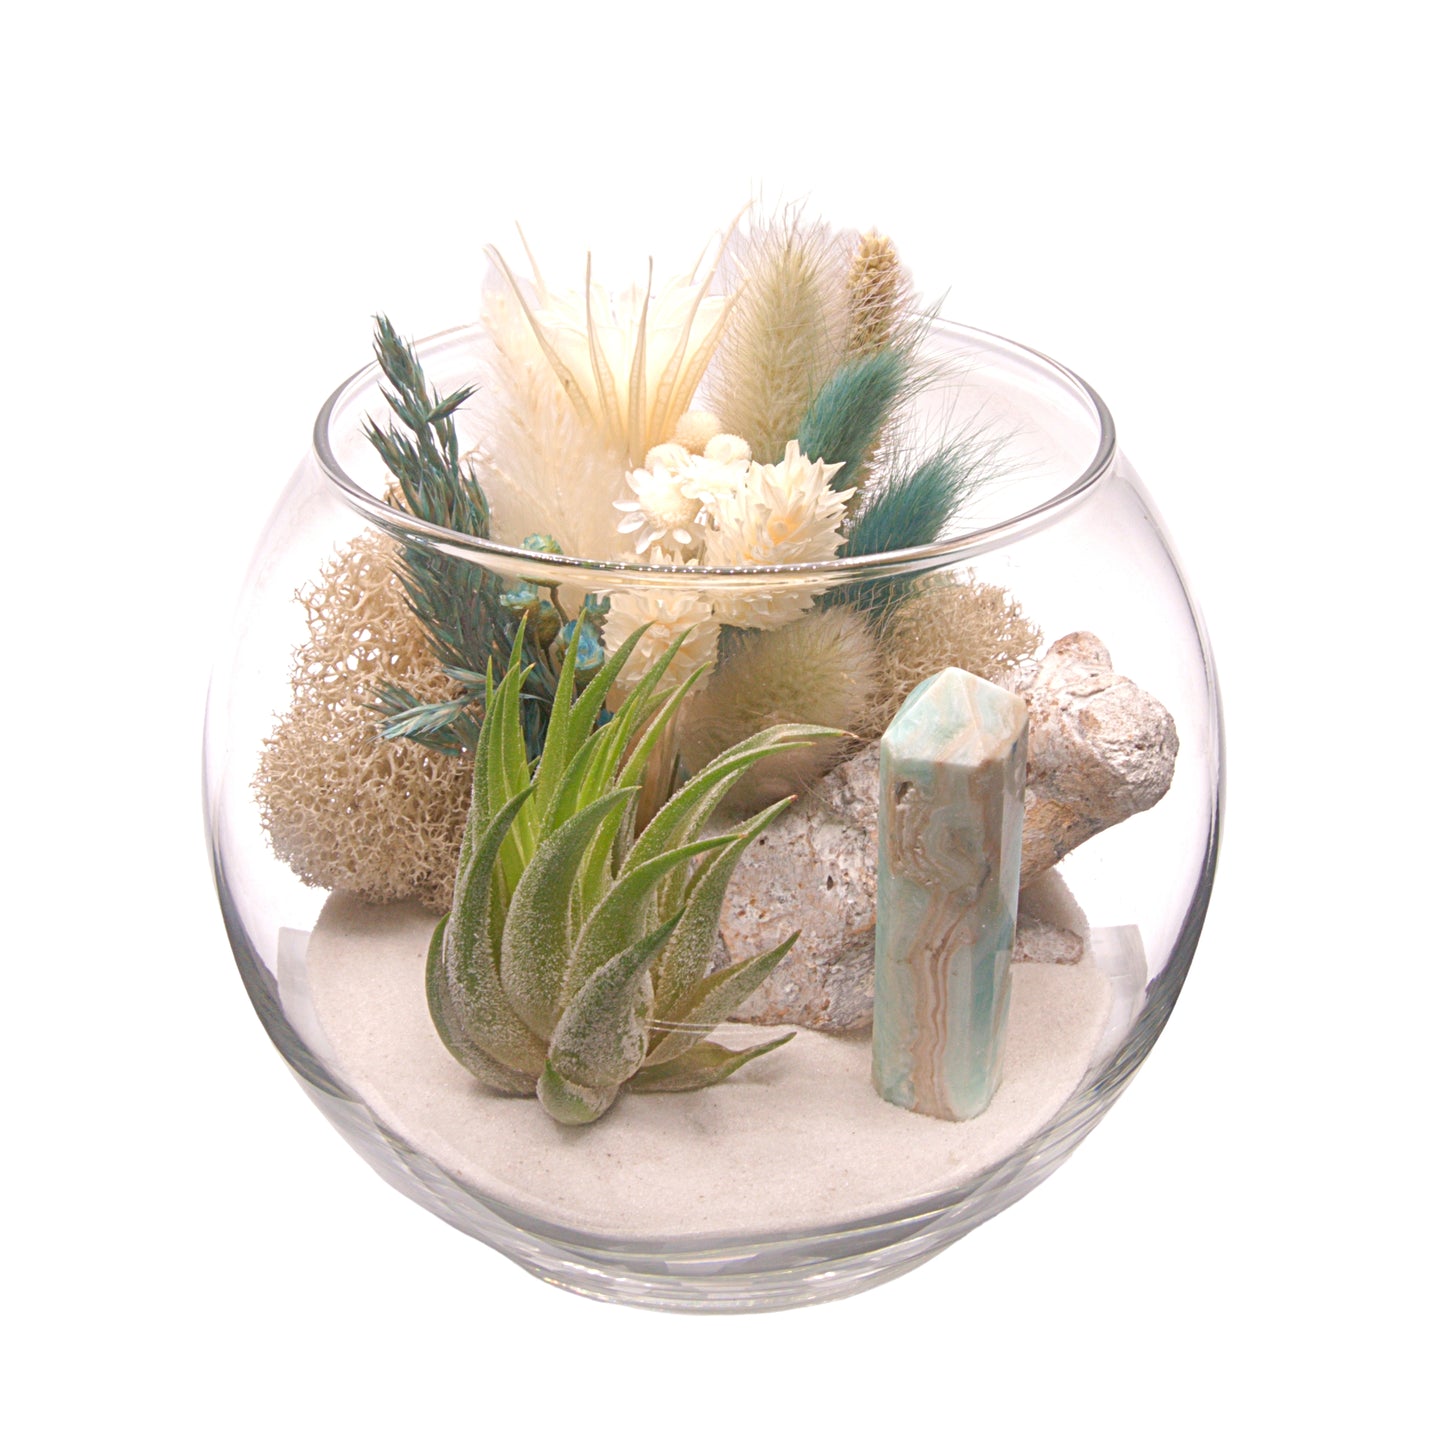 Terrarium à bol avec une plante aérienne - Calcite des Caraïbes